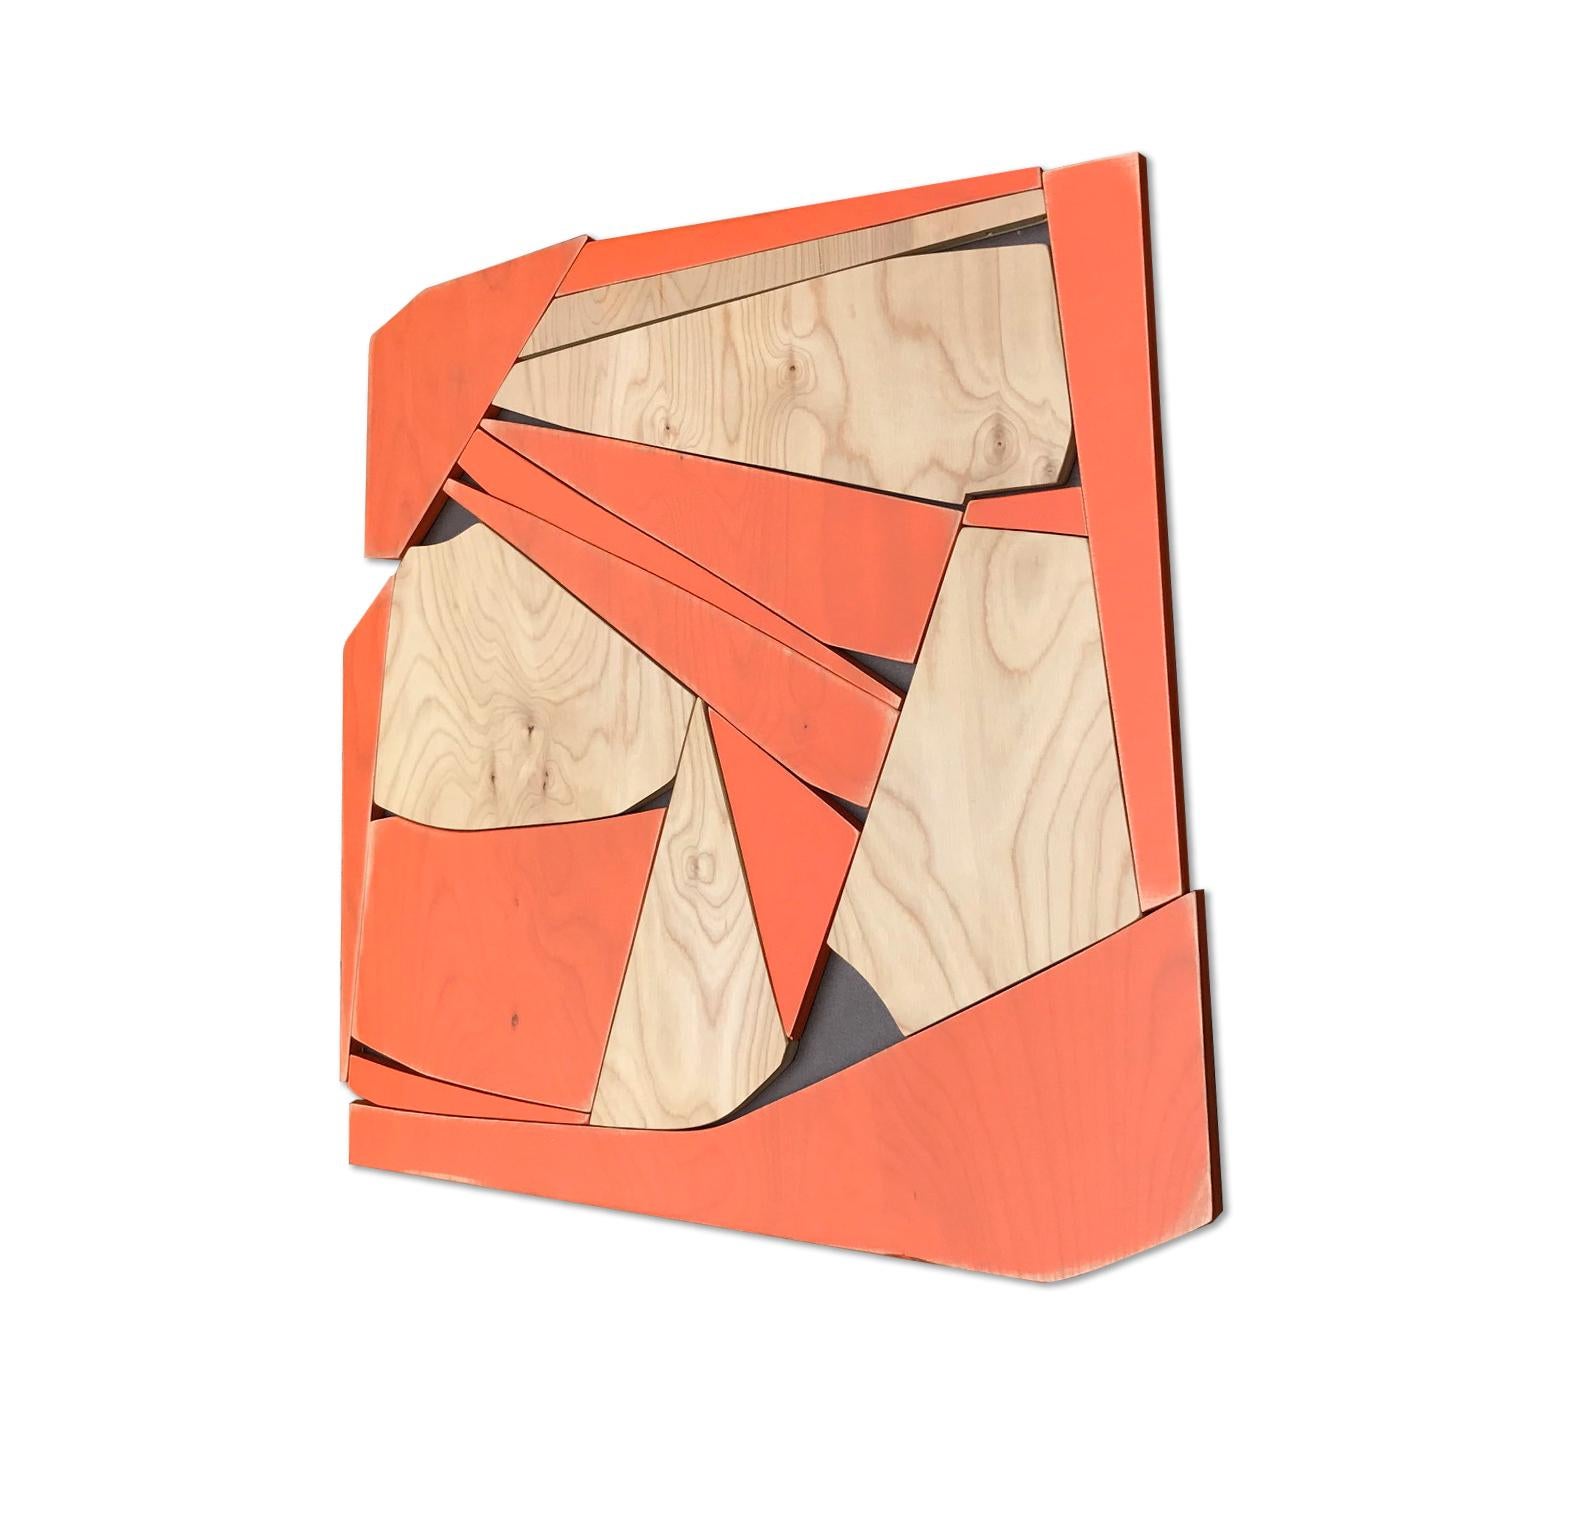 Transponder ist eine Flachrelief-Wandskulptur, die mit leuchtend orangefarbenen Latexwaschungen auf satiniertem Birkenholz hergestellt wurde. Es ist auf einem MDF-Träger montiert, der mit einer matten Kastanienmetallic-Emaillierung versehen ist. Das